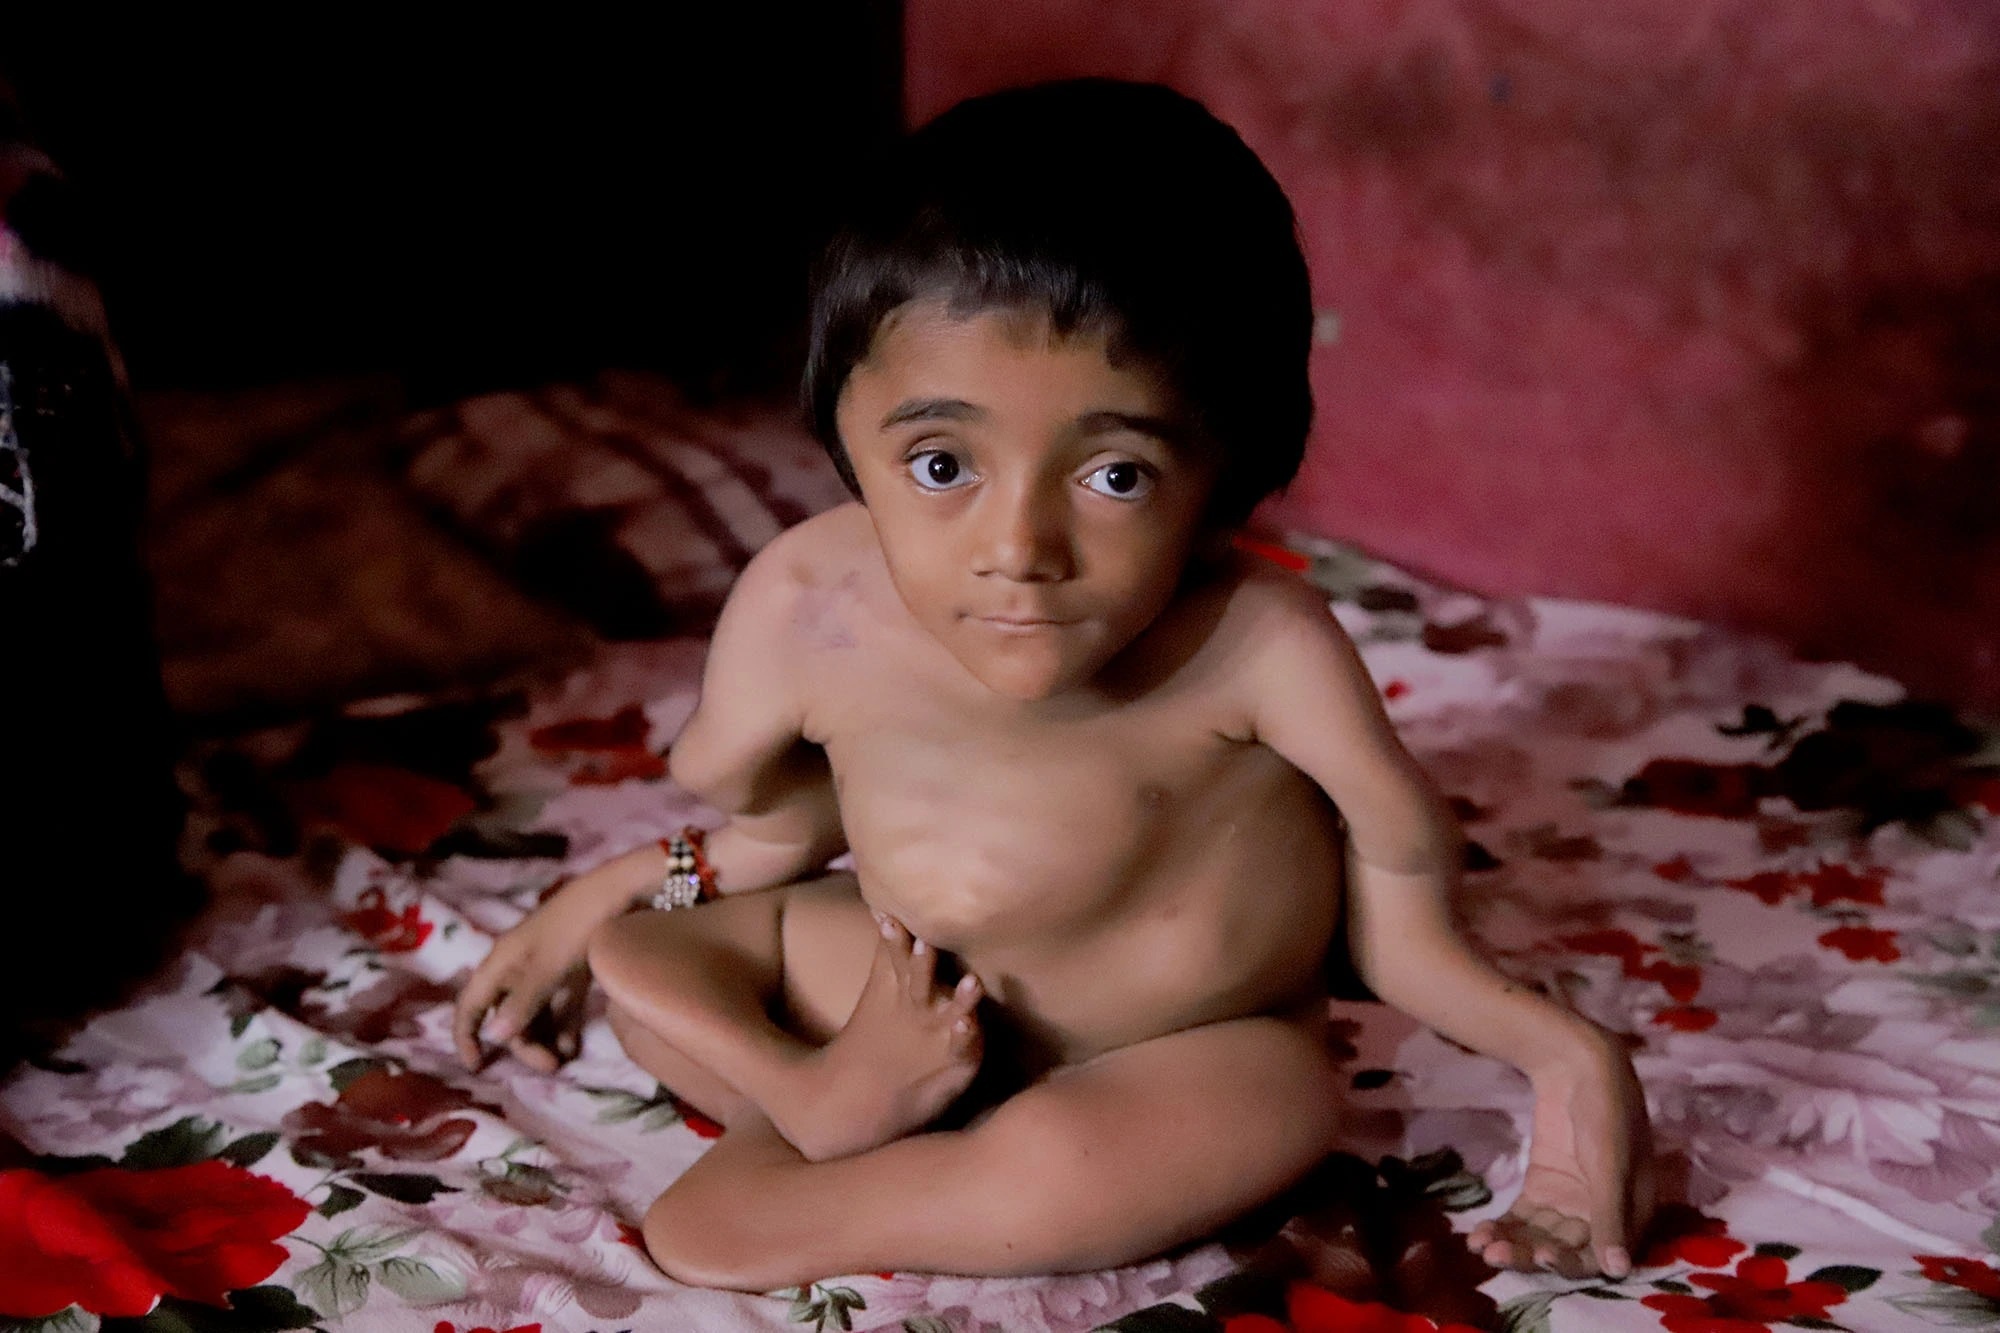 Em bé ở Ấn Độ bị gãy 100 chiếc xương vì bệnh hiếm-1